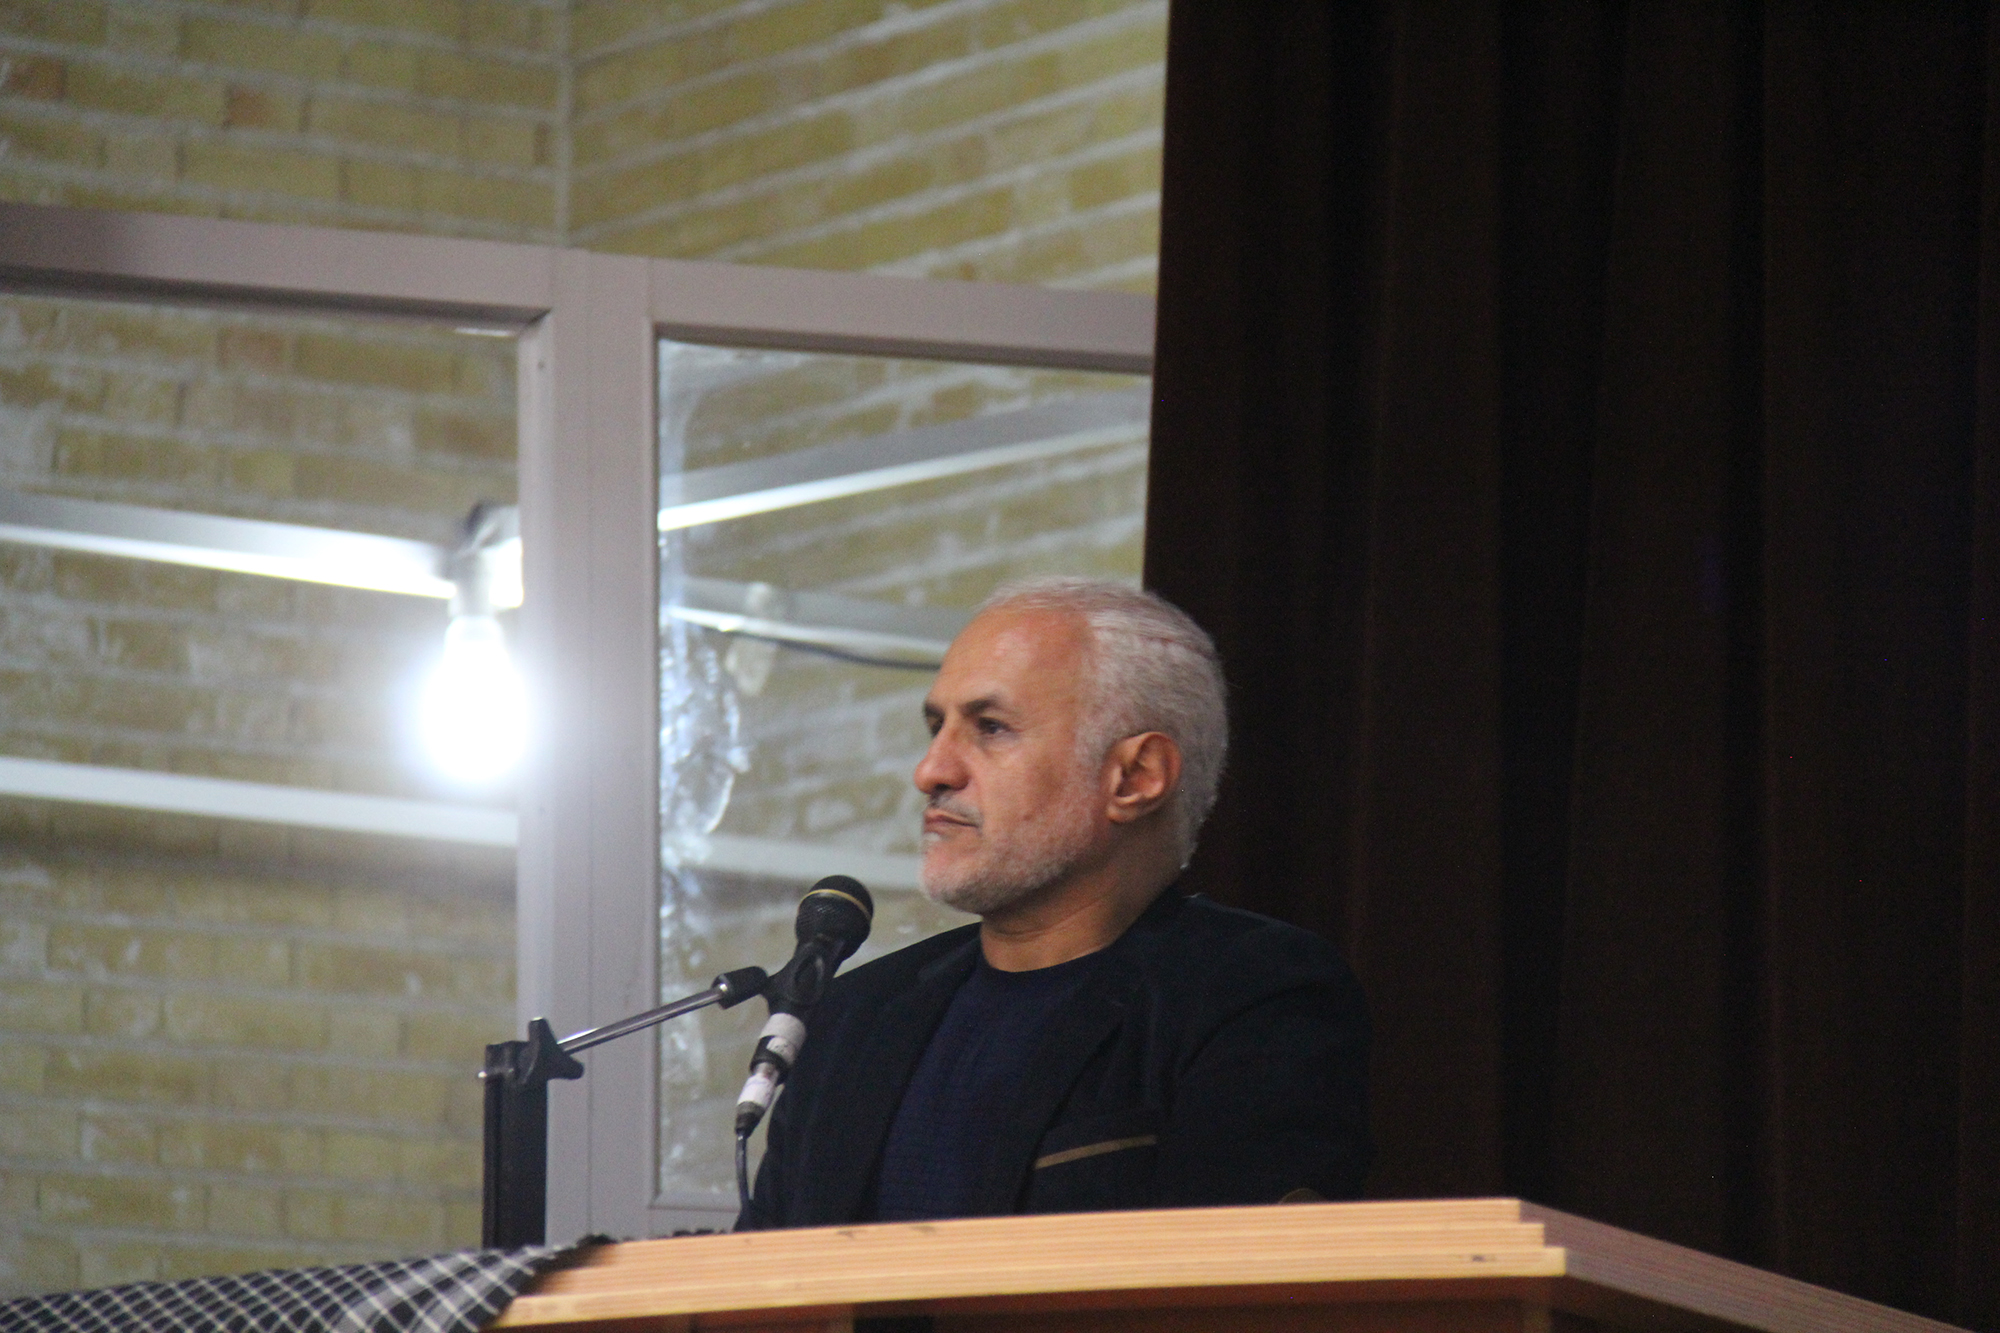 سخنرانی استاد حسن عباسی در دانشگاه کاشان - آفت ها و جوانه های انقلاب اسلامی